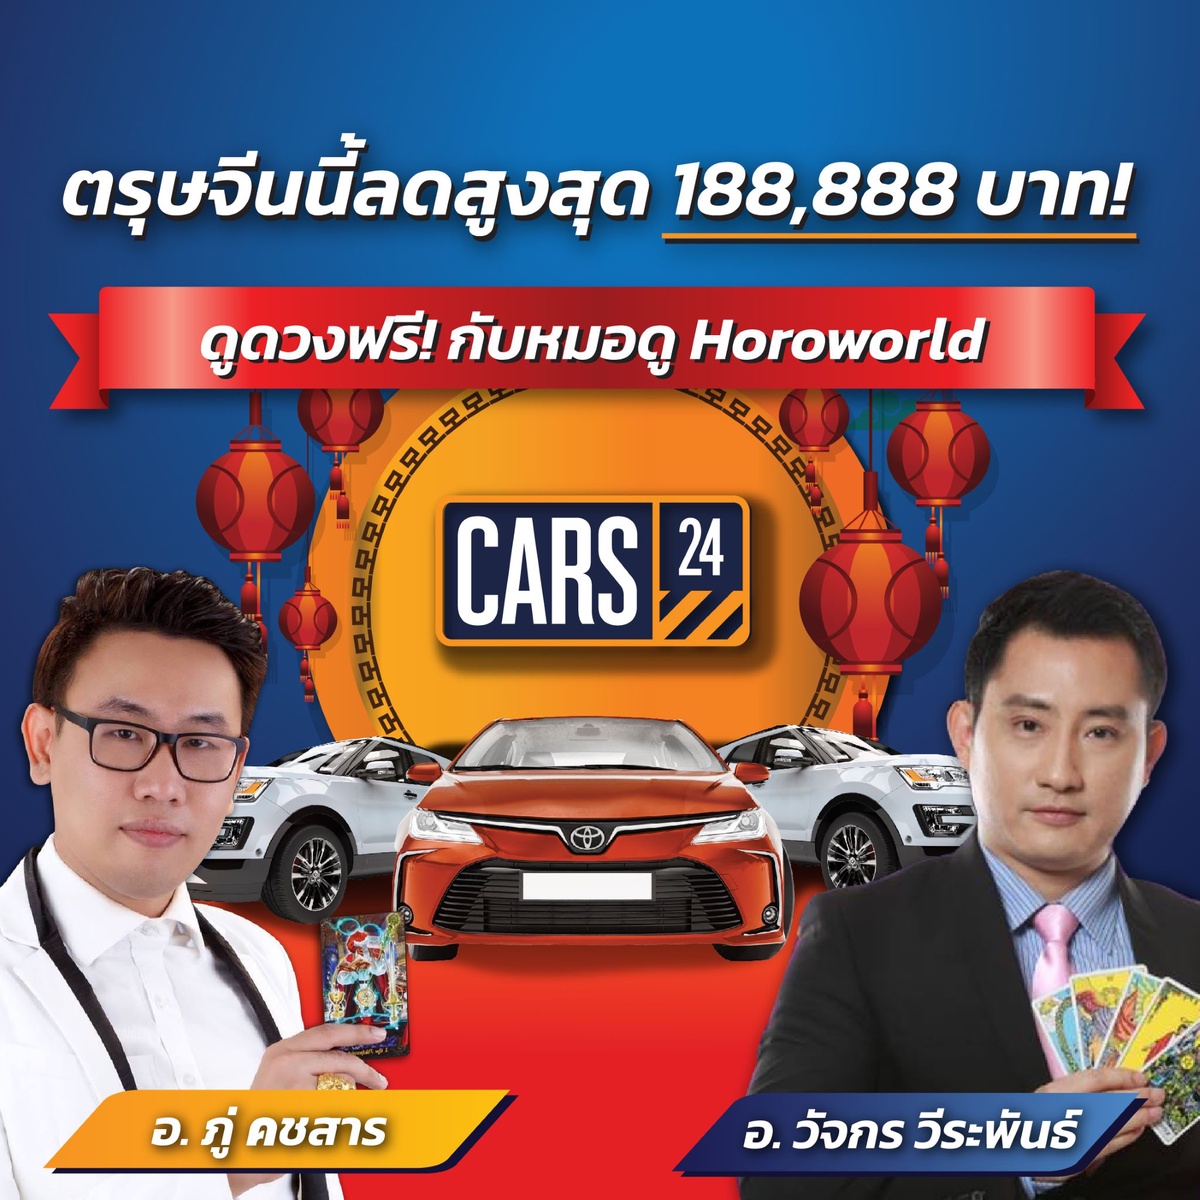 CARS24 ต้อนรับตรุษจีน ด้วยแคมเปญร้อนแรงแห่งปี เอาใจคนอยากซื้อรถ ด้วยส่วนลดสูงสุด 188,888 บาท ผ่อน 0% นาน 12 เดือน พร้อมเสริมความเฮง กับหมอดูชื่อดัง!